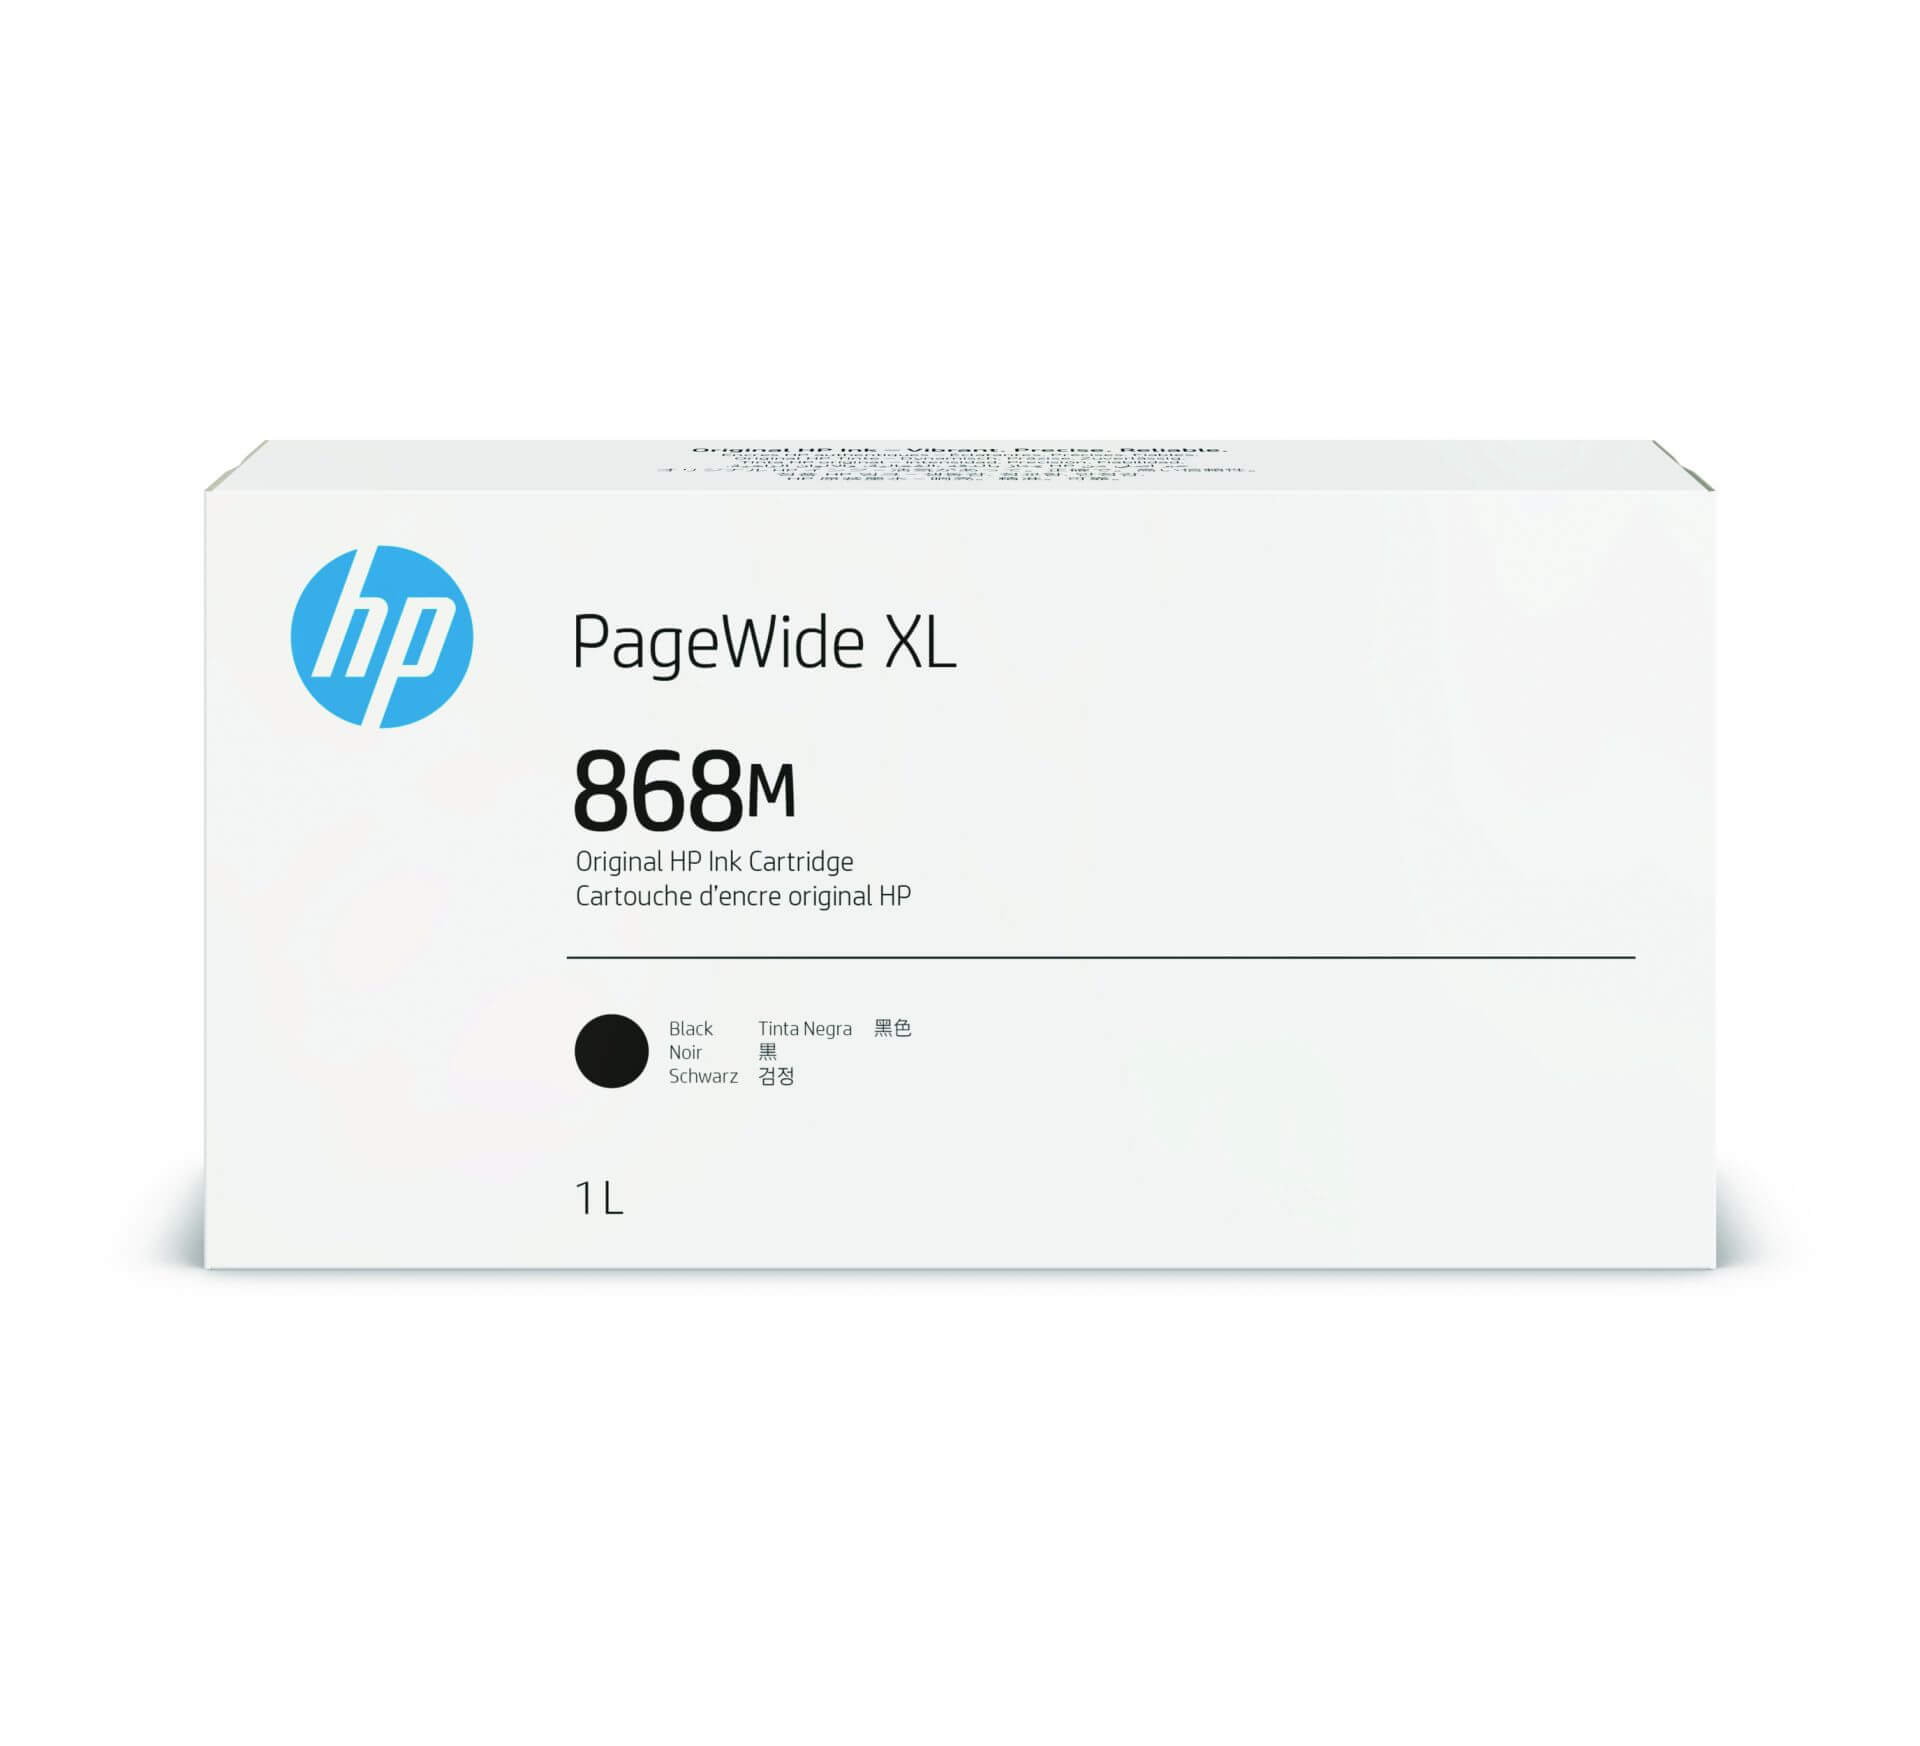 HP 868M PageWide Tinte XL Ink  schwarz - 1000 ml